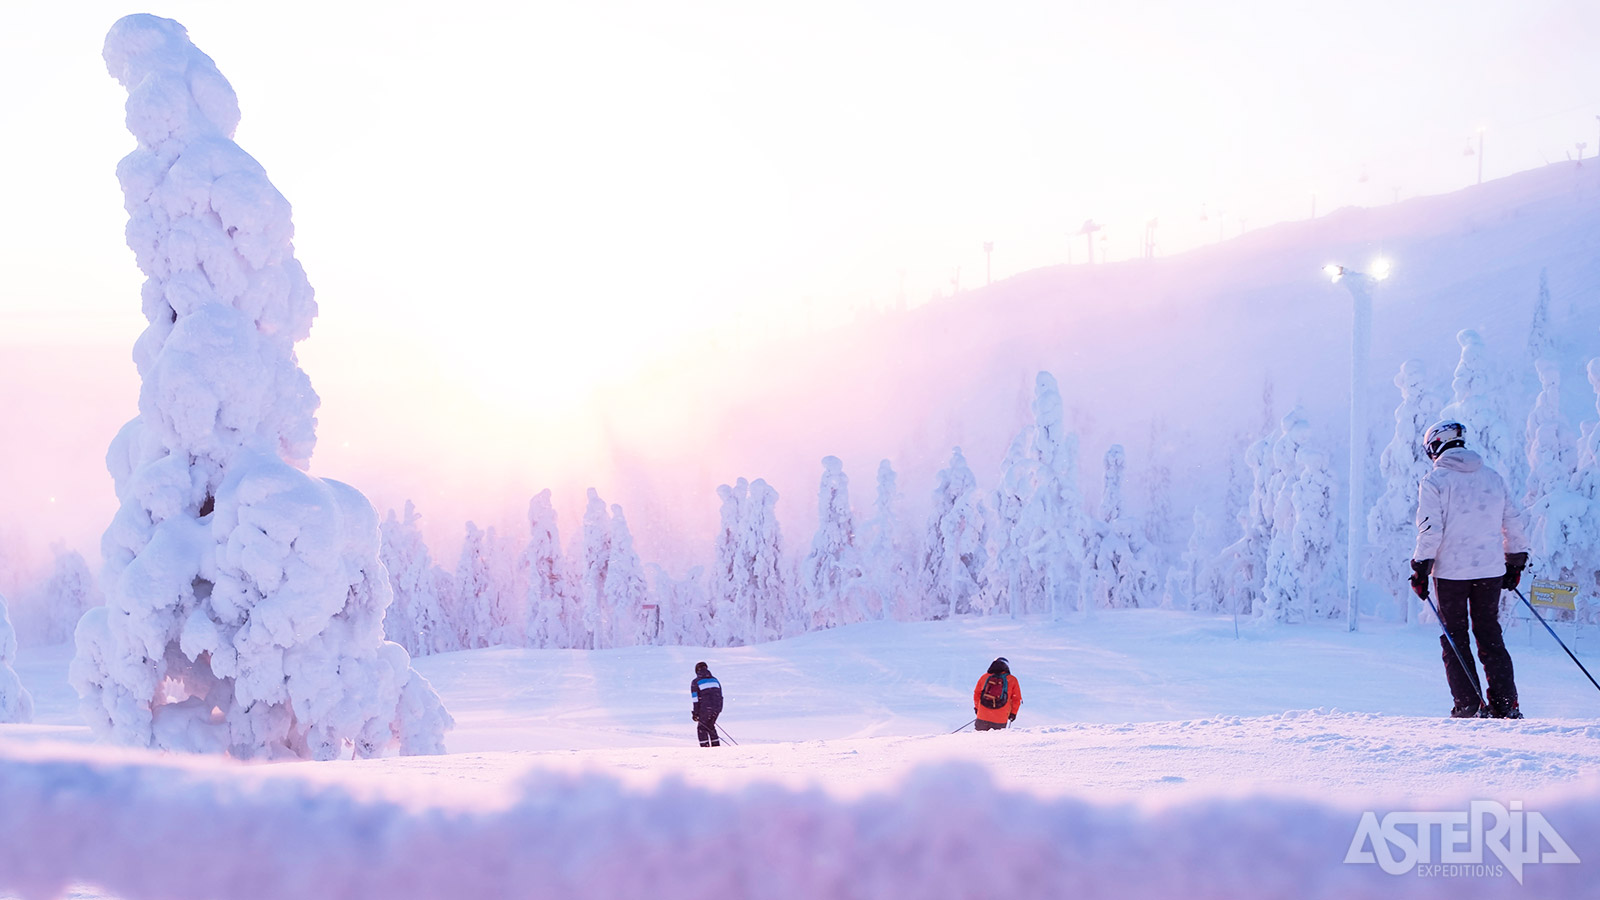 Ruka staat ook garant voor één van de betere skigebieden van Finland